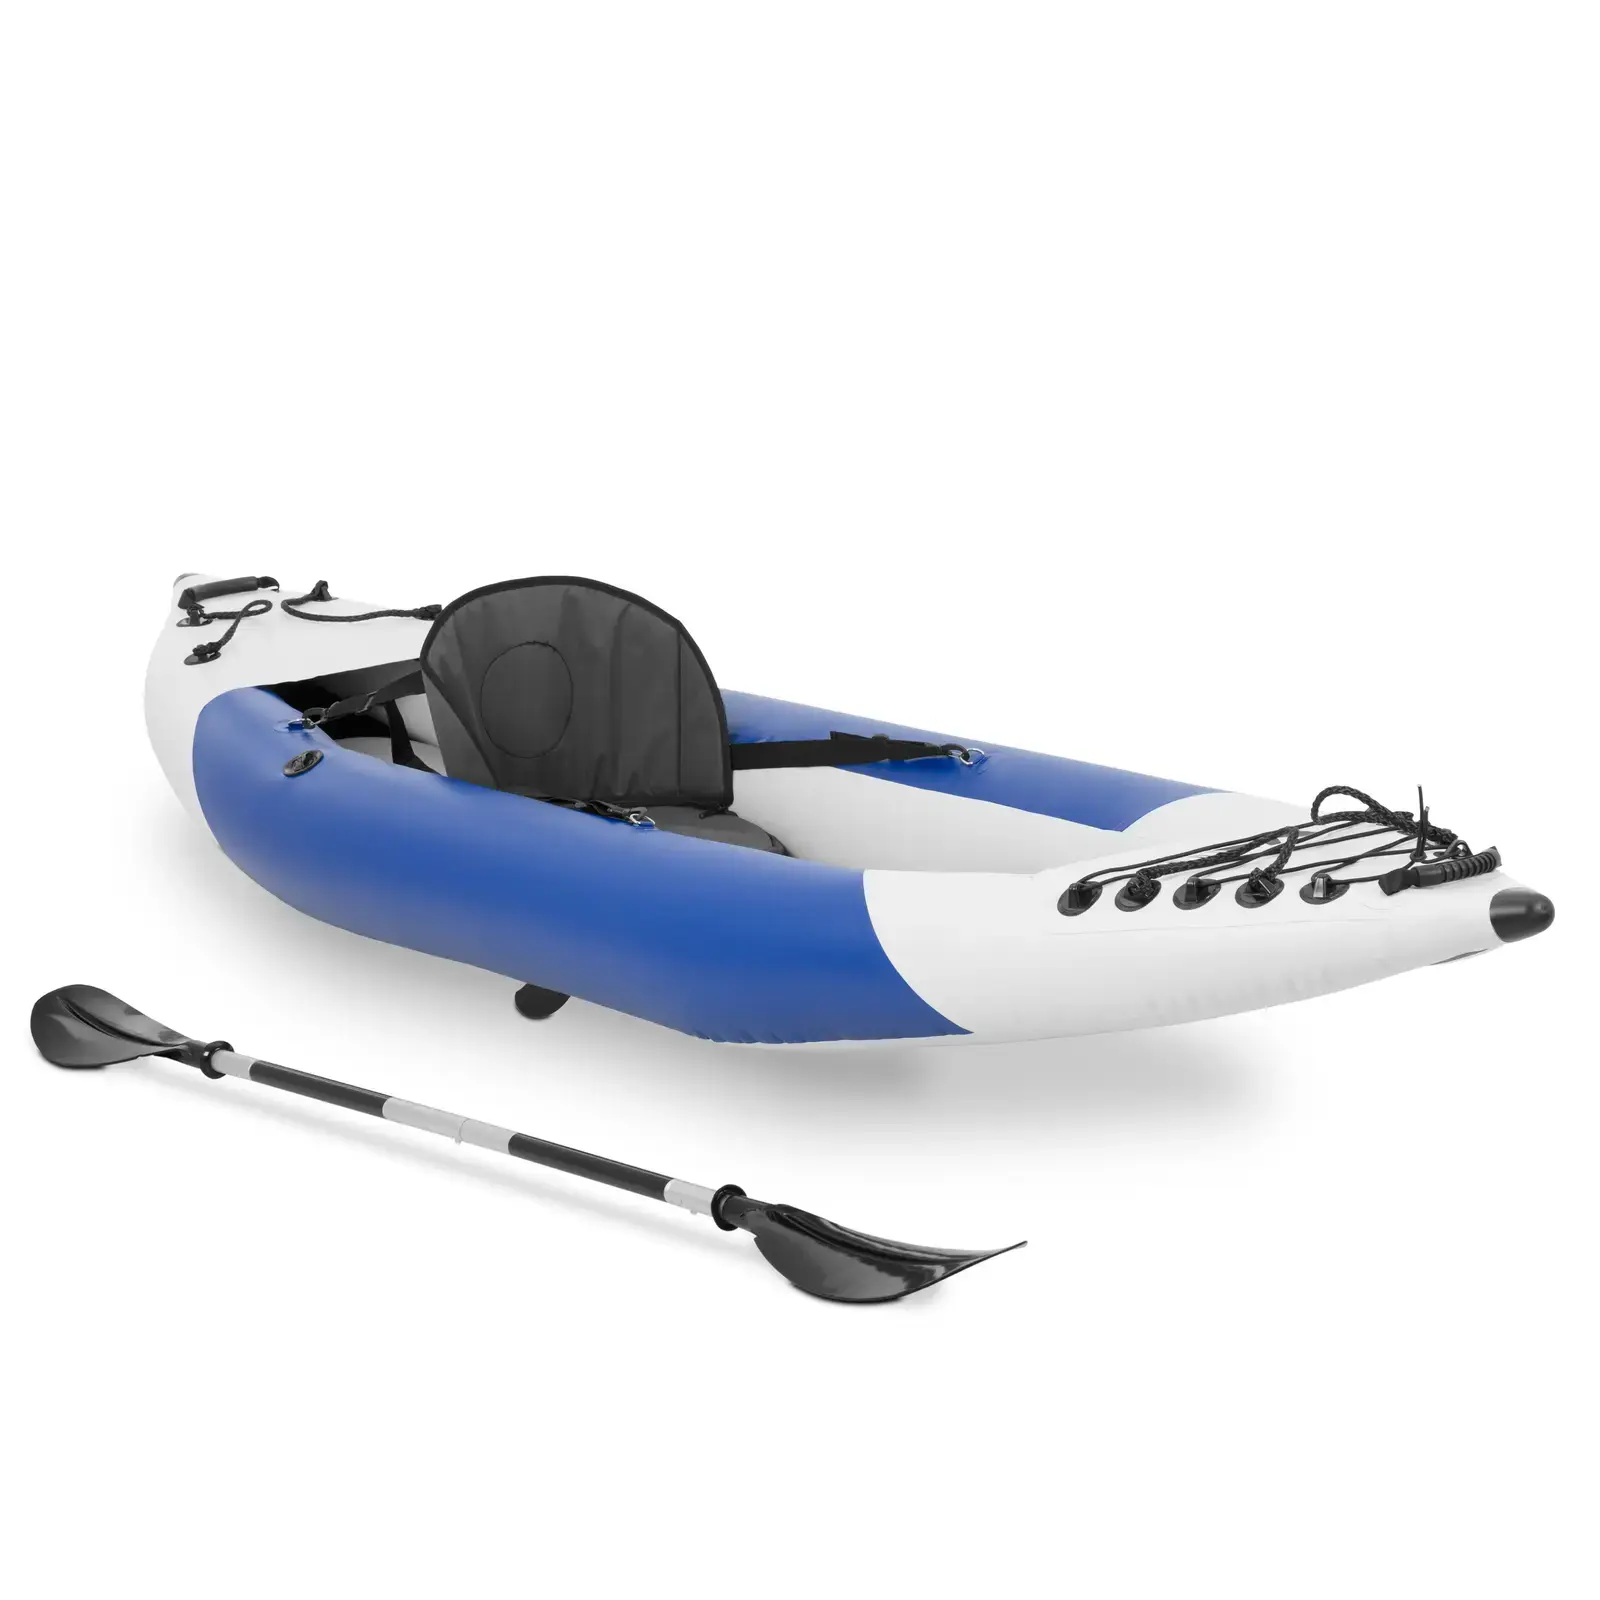 MSW Opblaasbare kajak - single seater - complete set met peddel, zitje en toebehoren